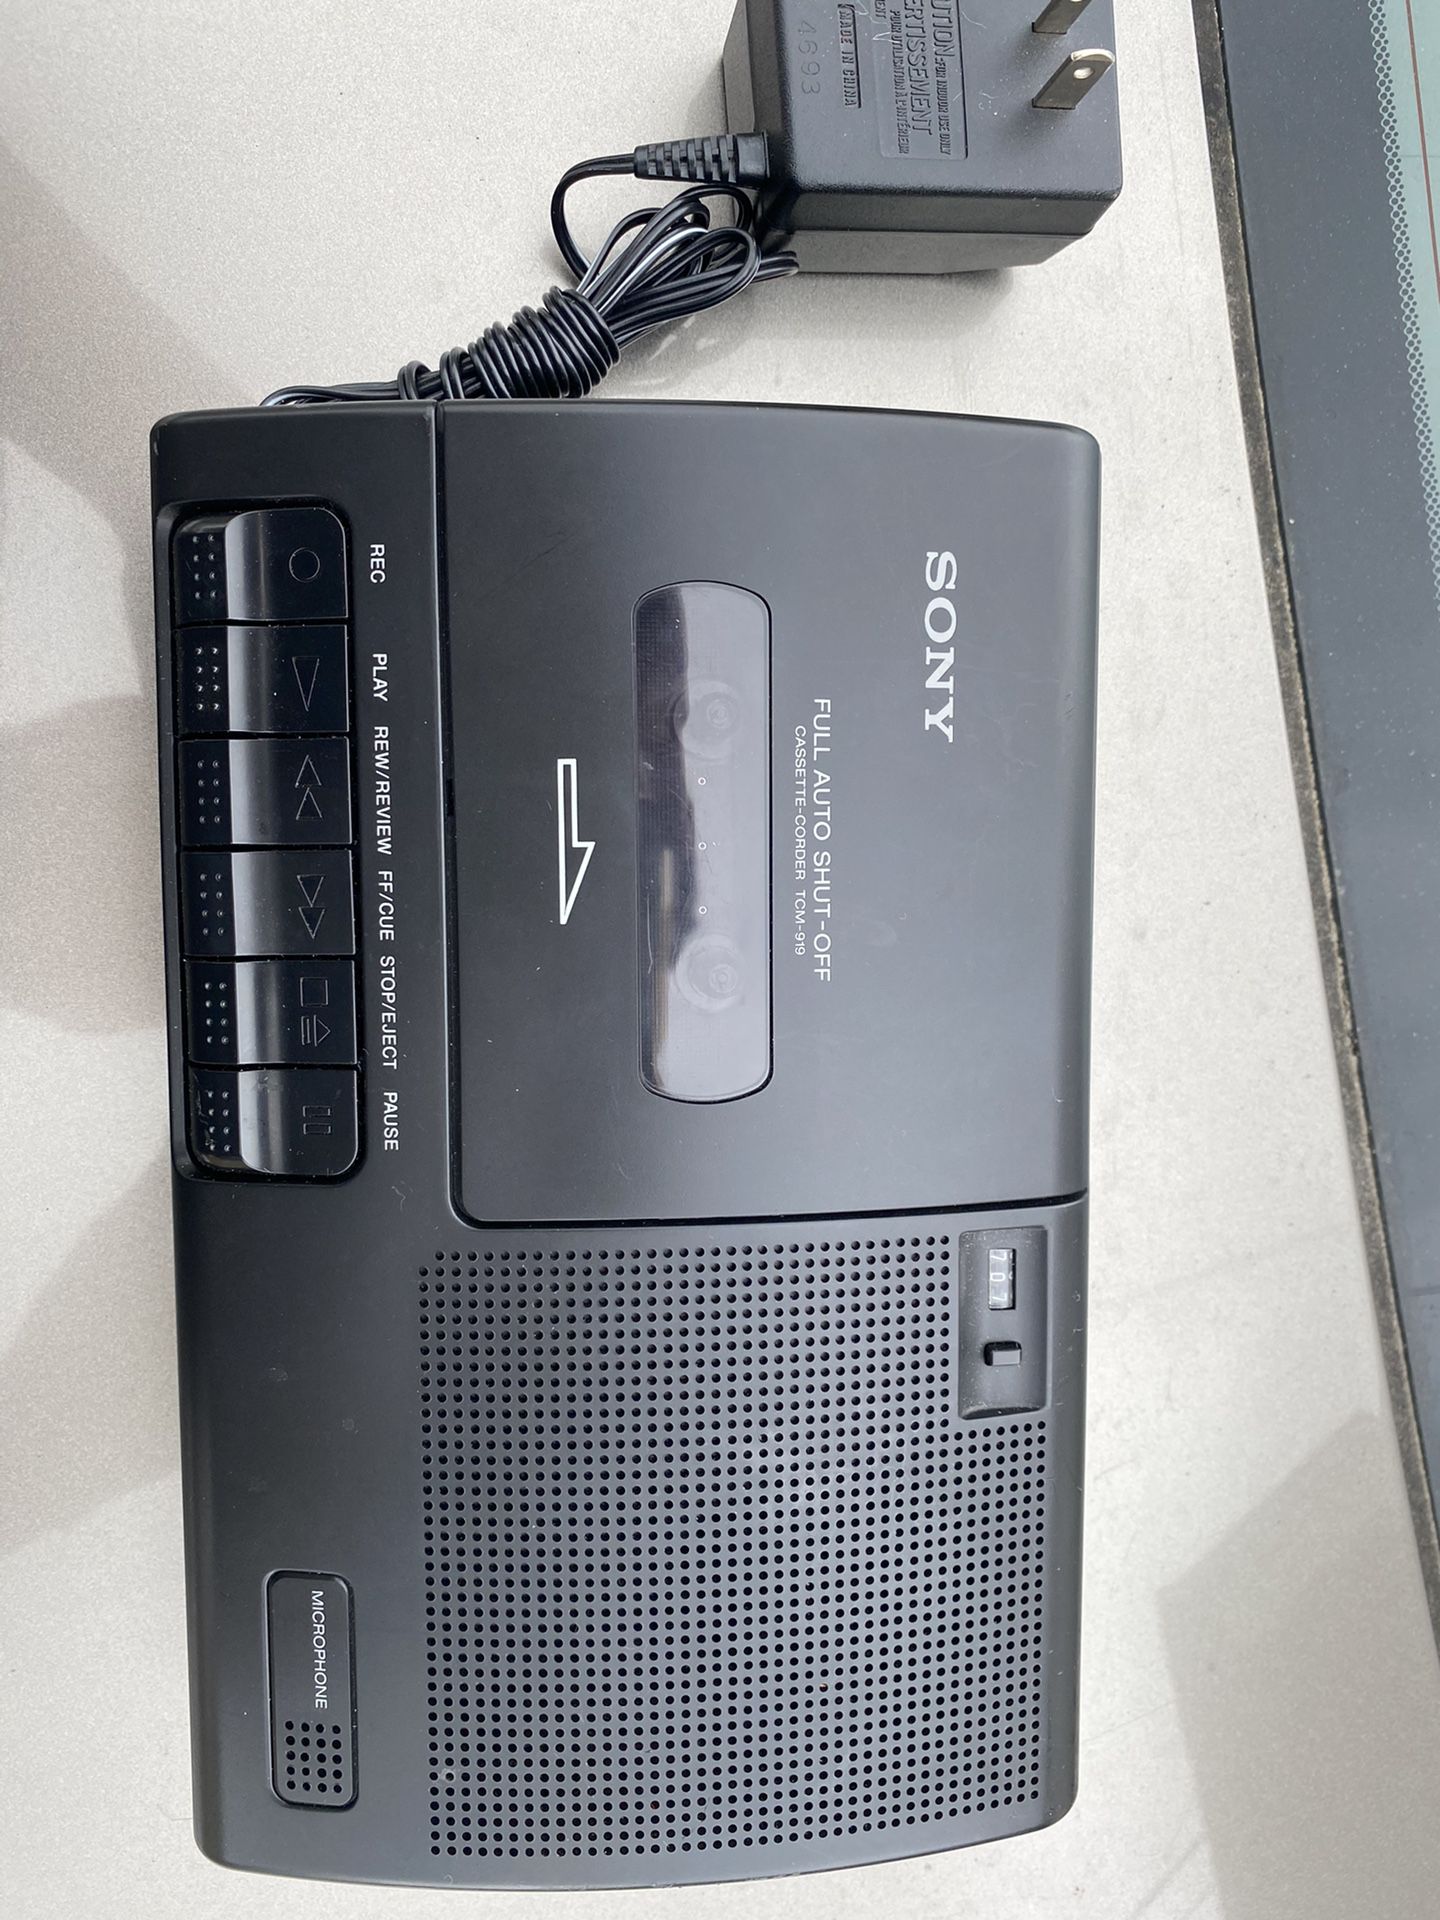 Sony cassette tape recorder